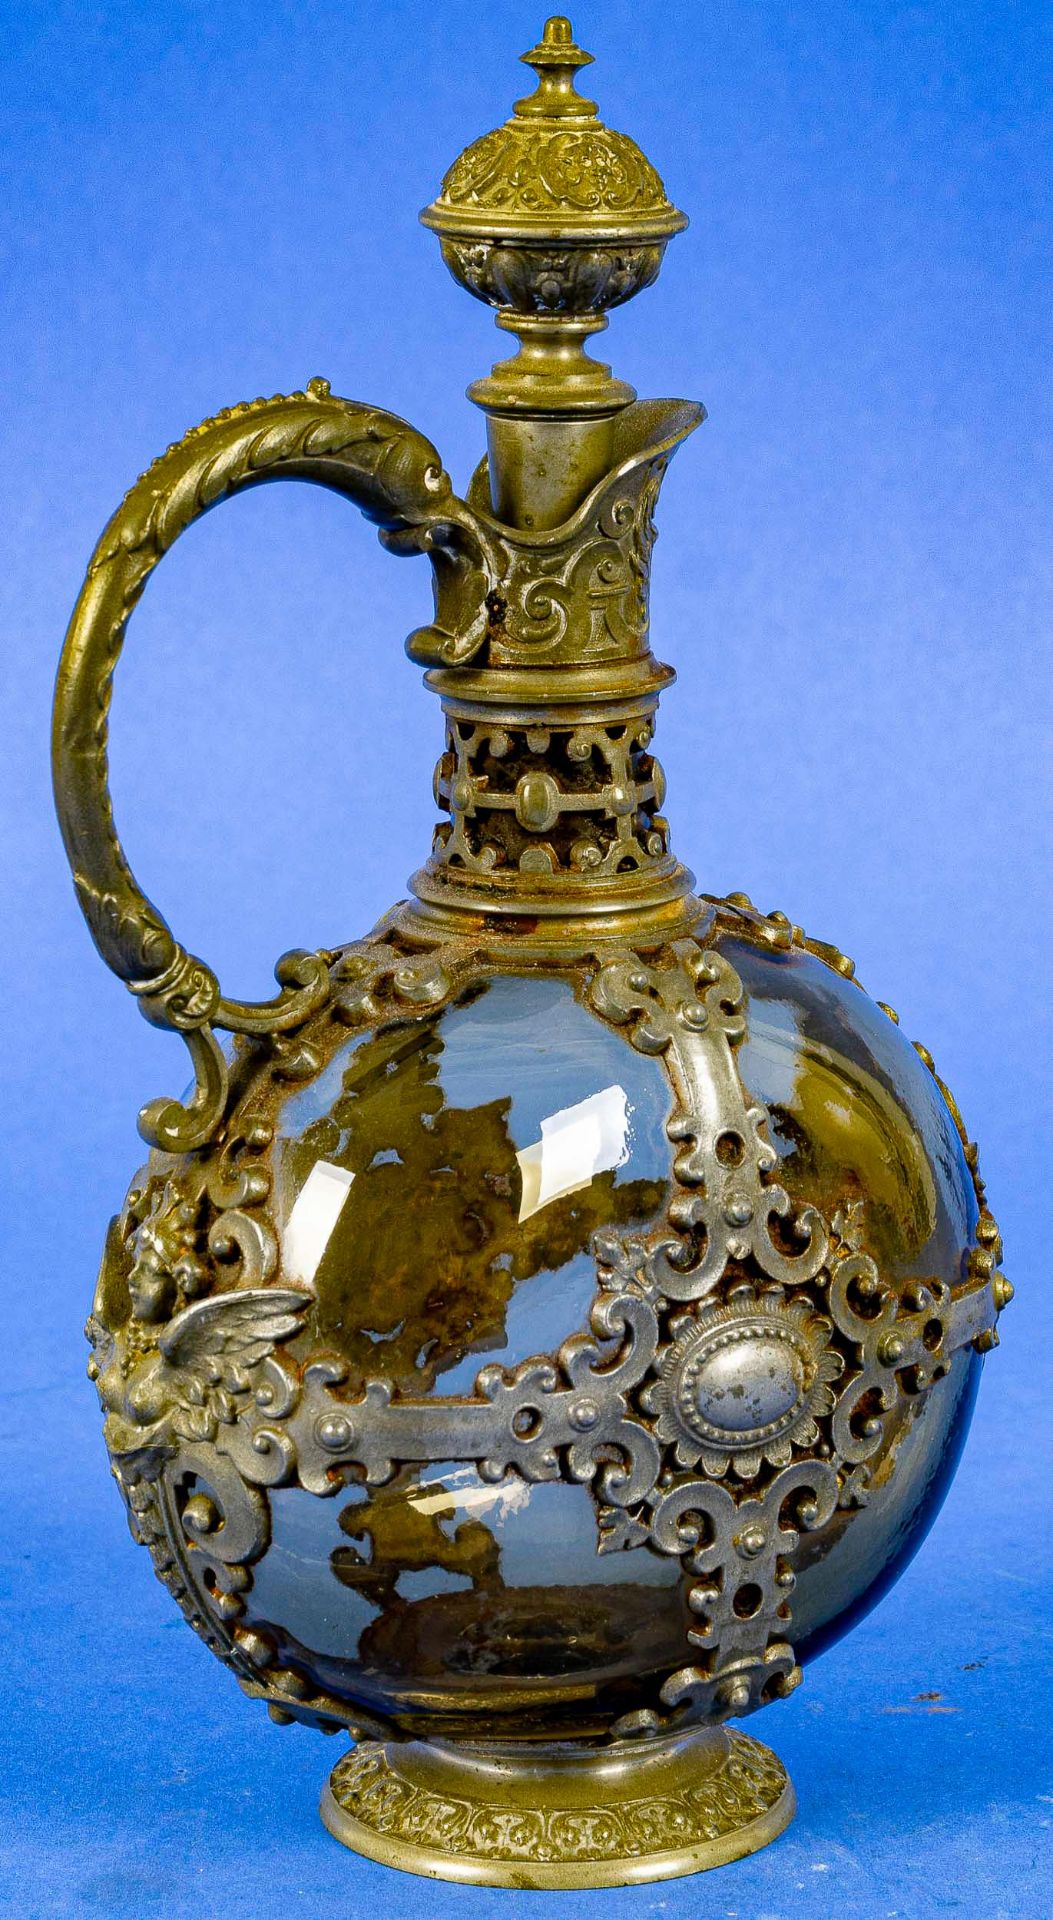 Kleine Karaffe für Likör o. ä., gelbliches Glas mit aufwändiger Zinnmontur, Historismus um 1900. Hö - Image 6 of 6